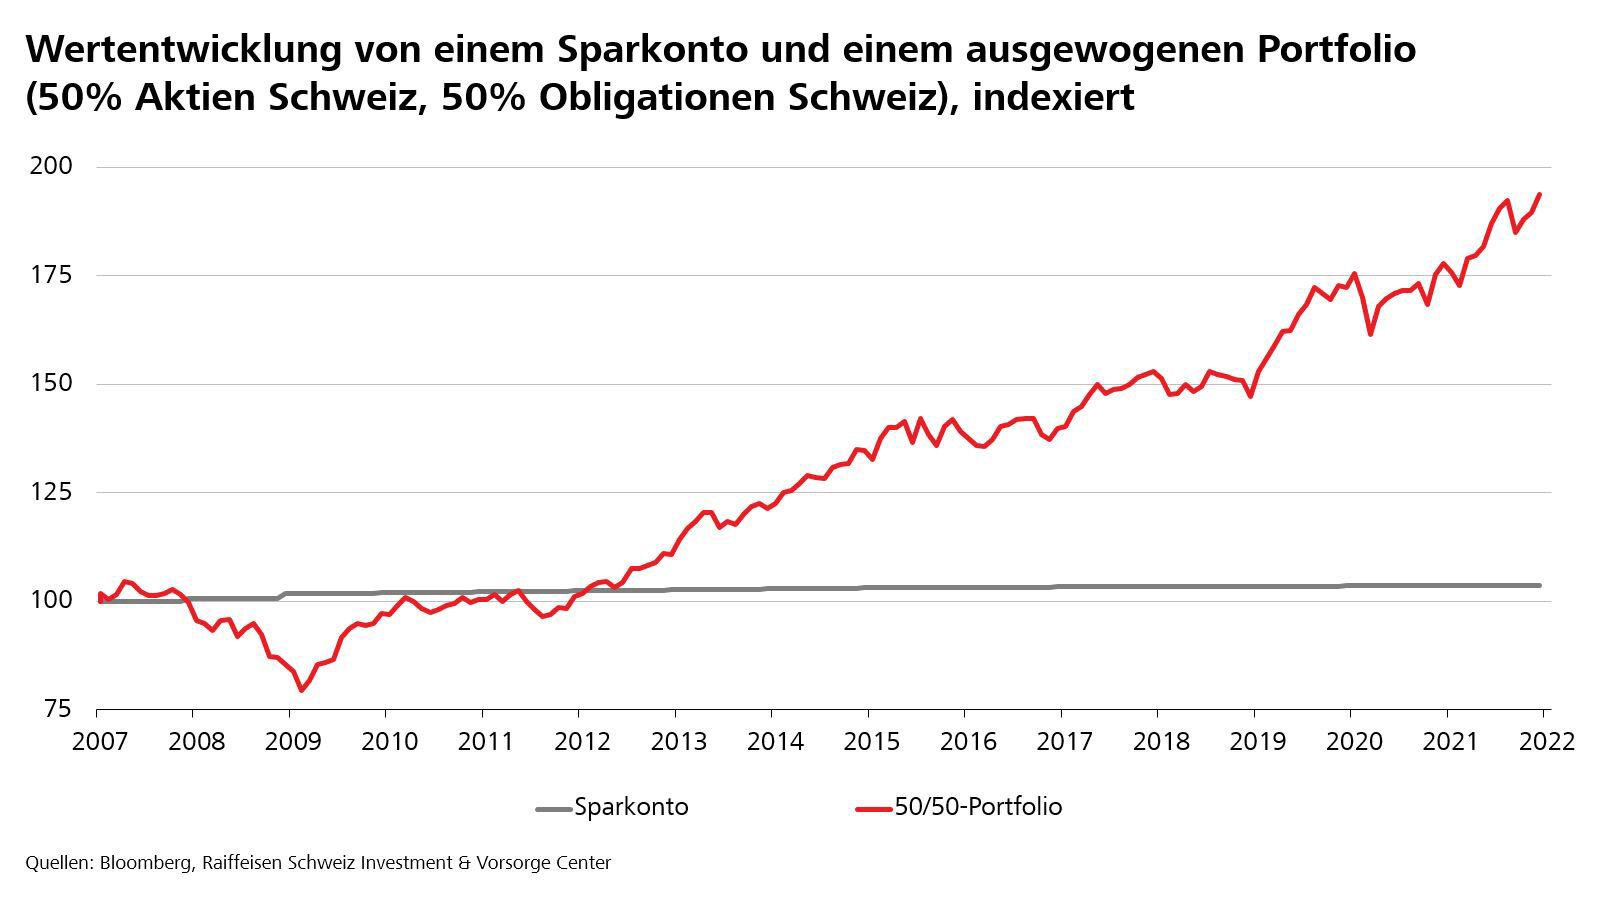 Wertentwicklung Aktienkurs versus Sparkonto seit 2007